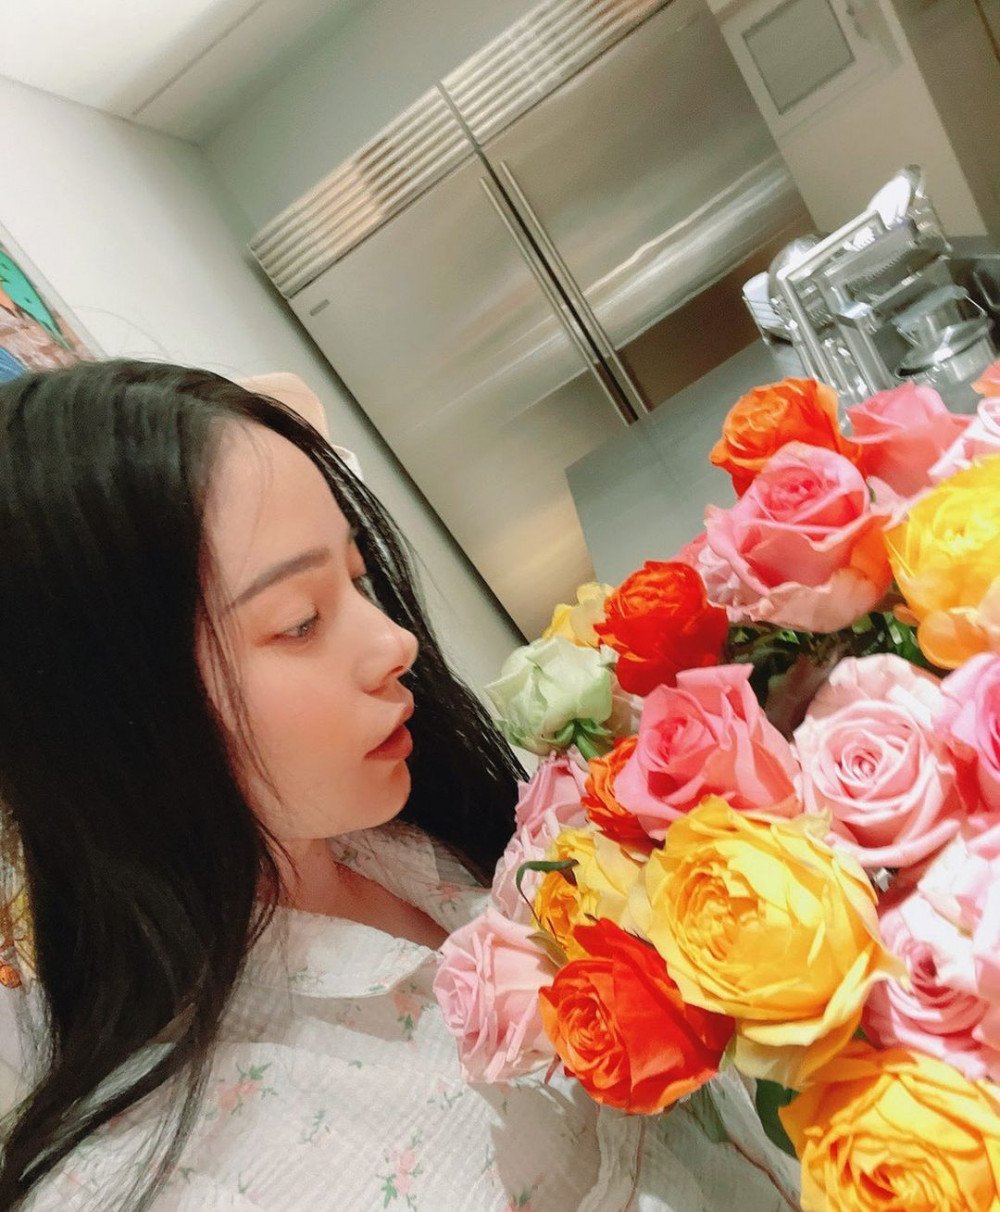 Жена Тэяна Мин Хё Рин поделилась красивыми фотографиями с цветами в своем аккаунте в Instagram